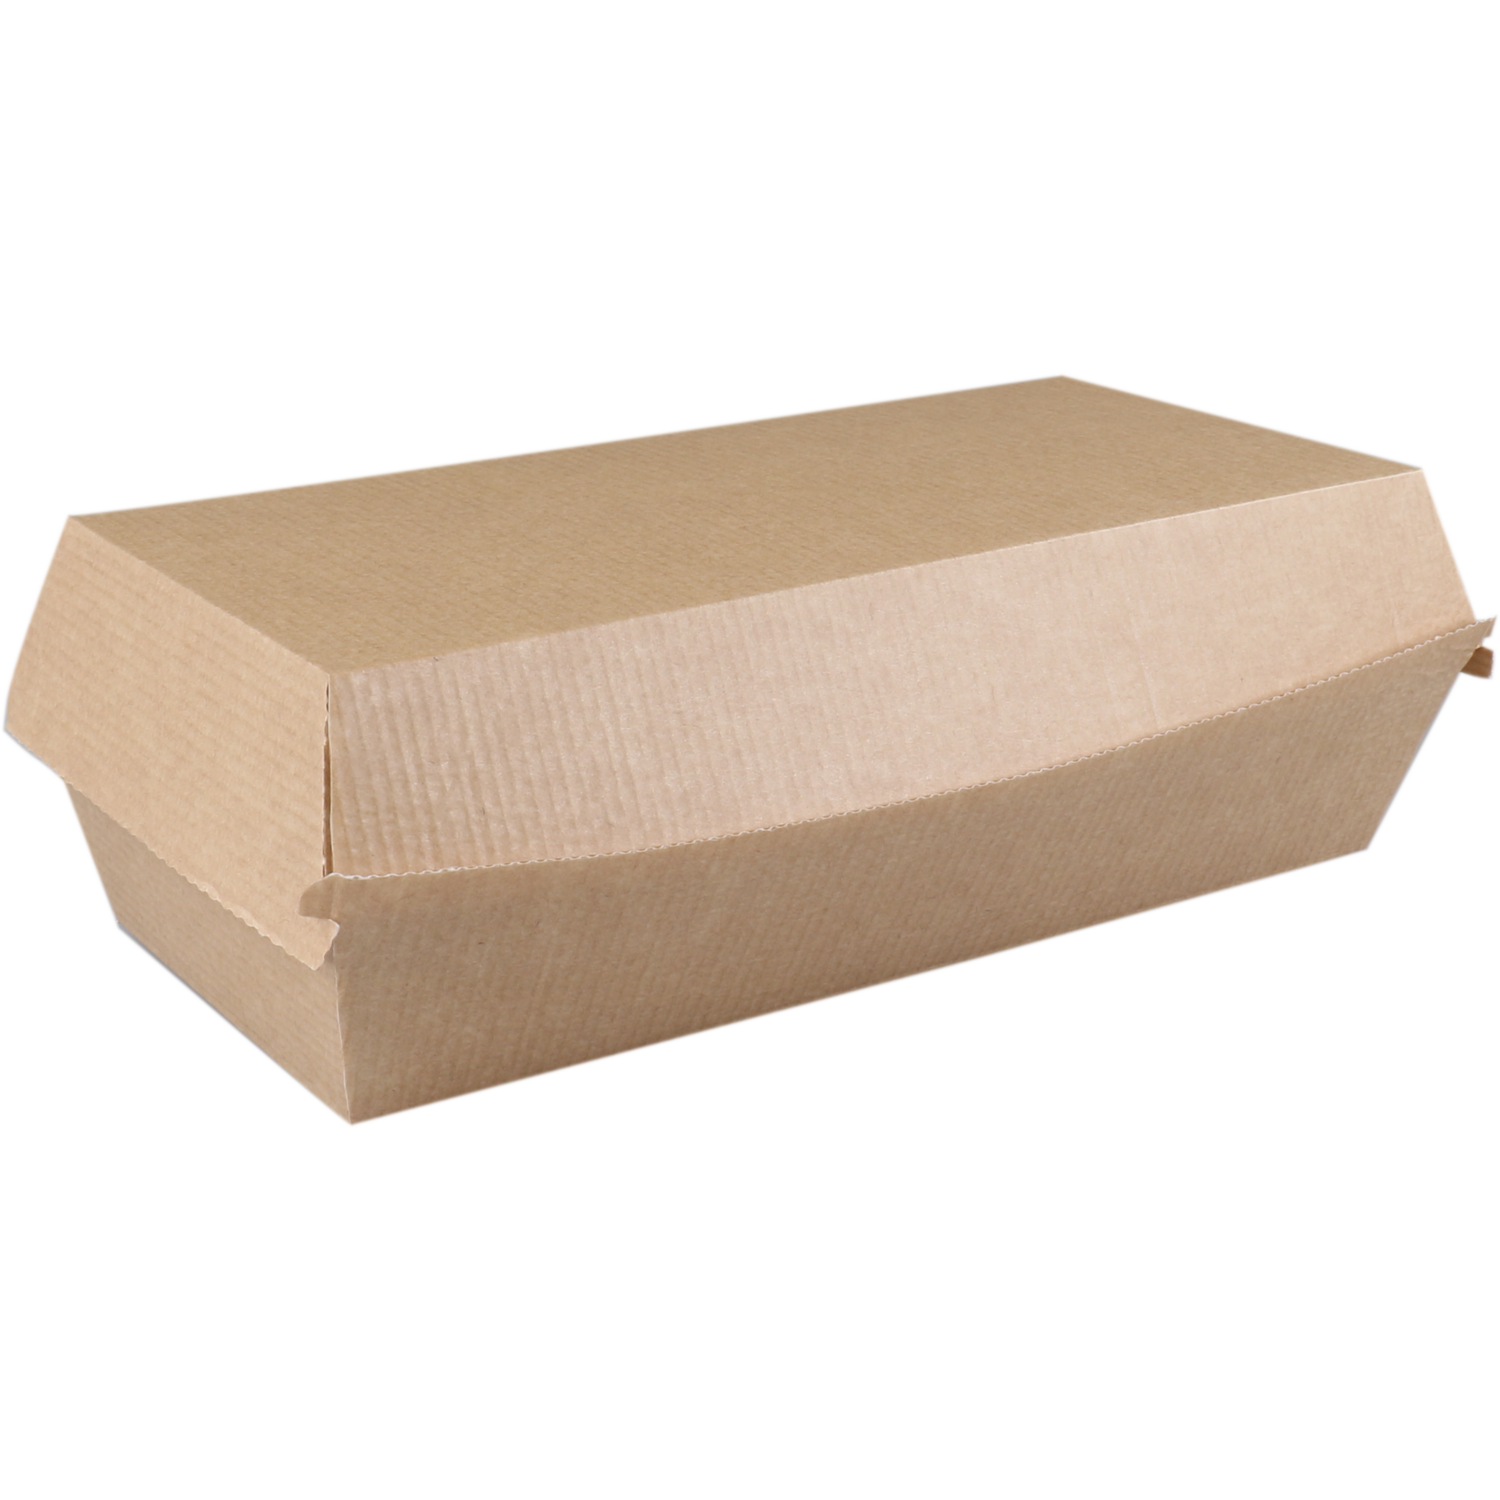 Bak, Ersatzpapier, sandwichbox, 185x85x38mm, bruin 1